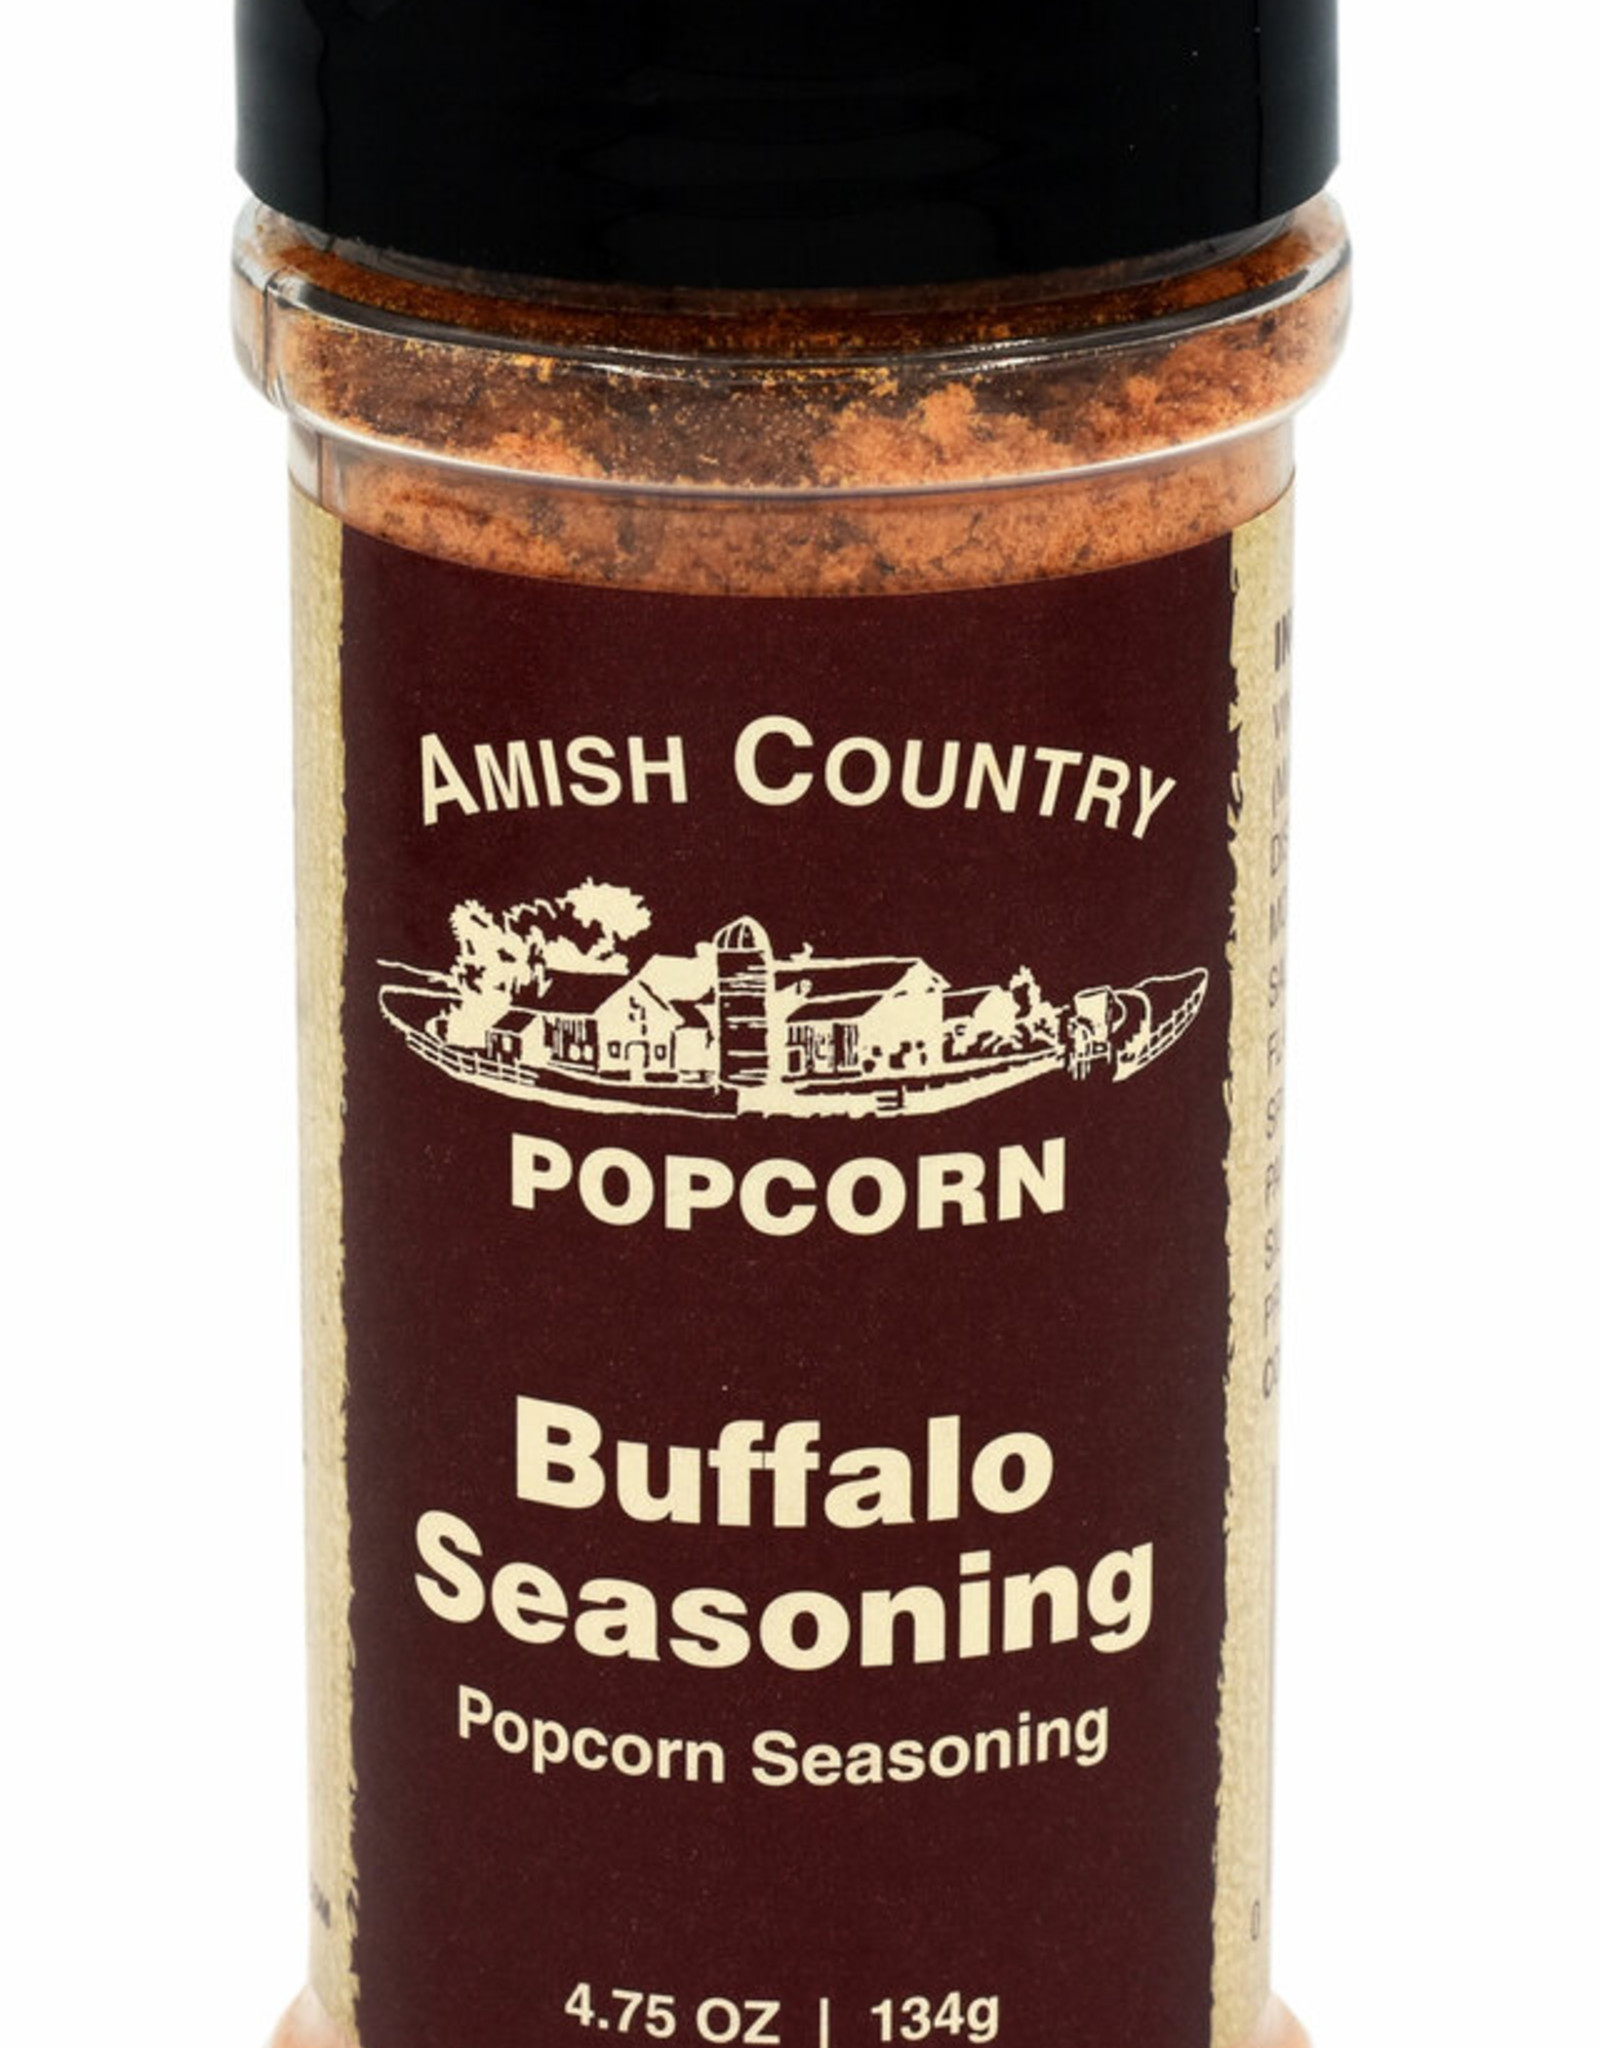 Amish County Popcorn Popcorn Seasoning